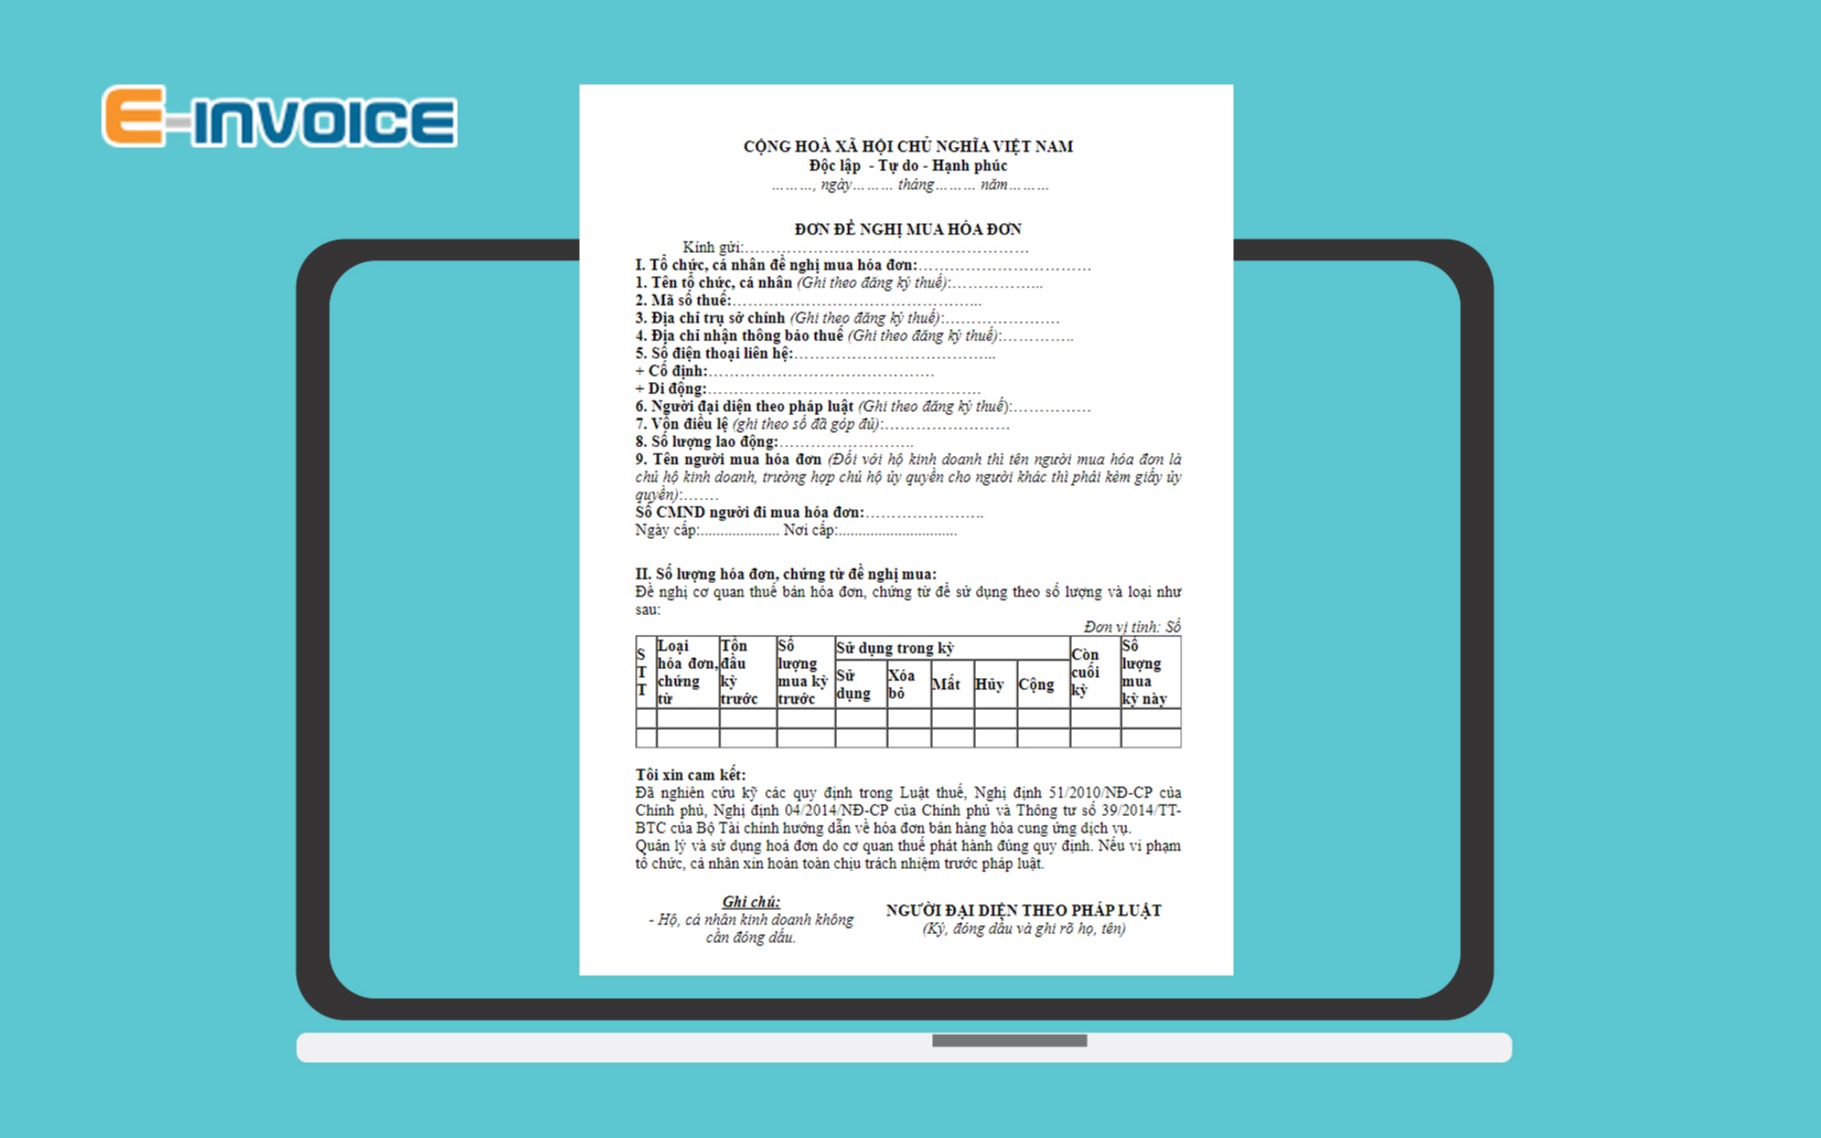 Cập nhật mẫu đơn đề nghị mua hóa đơn mới nhất theo Thông tư 39/2014/TT-BTC